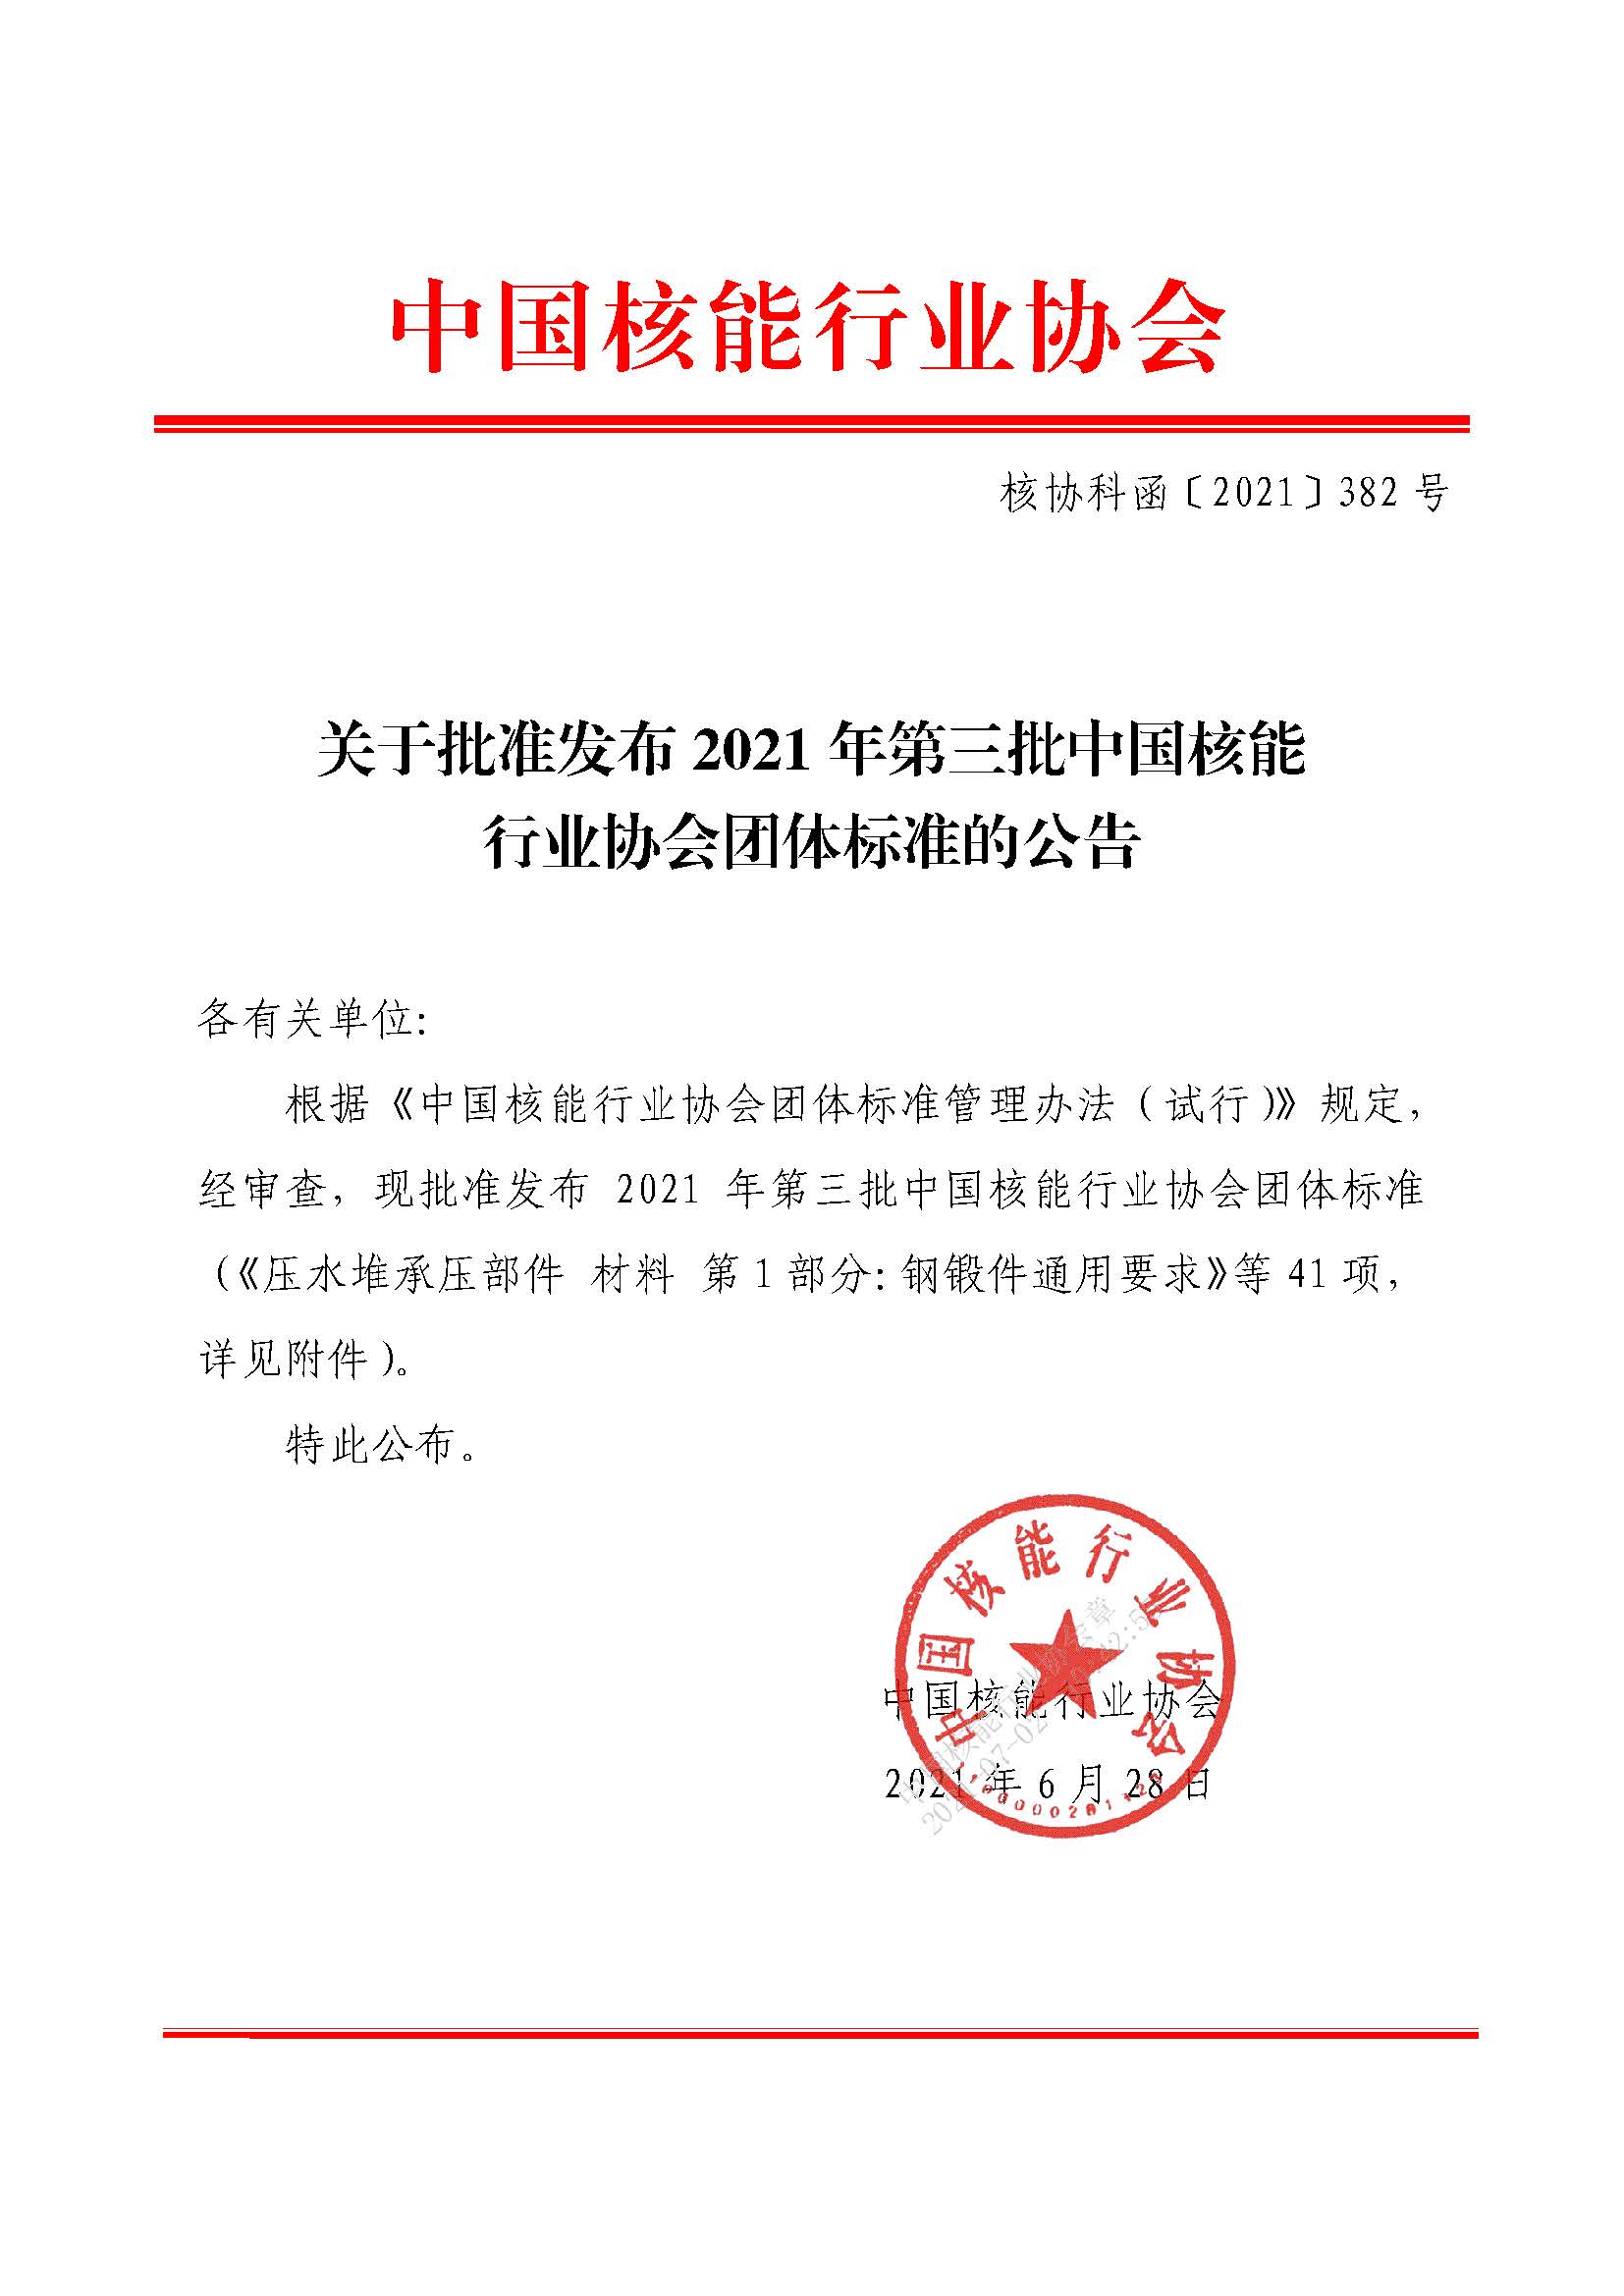 关于批准发布2021年第三批中国核能行业协会团体标准的公告_页面_1.jpg